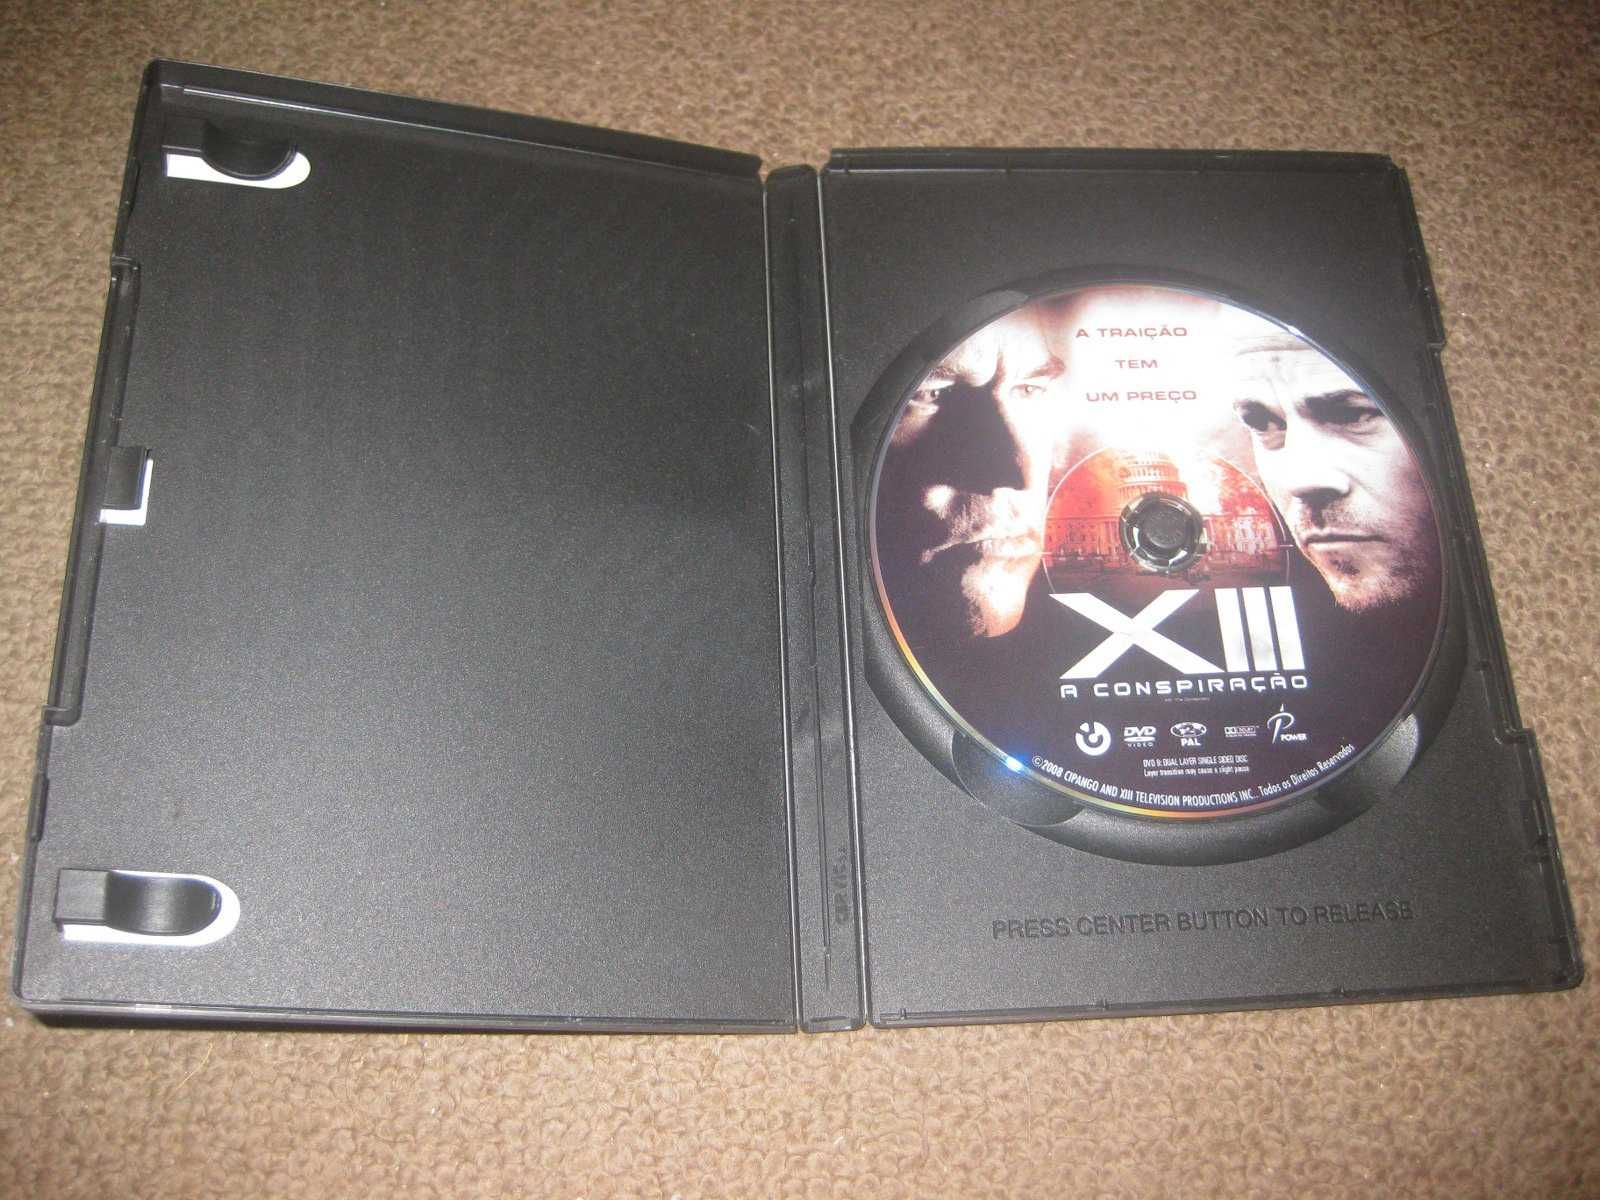 DVD "XIII: A Conspiração" com Val Kilmer